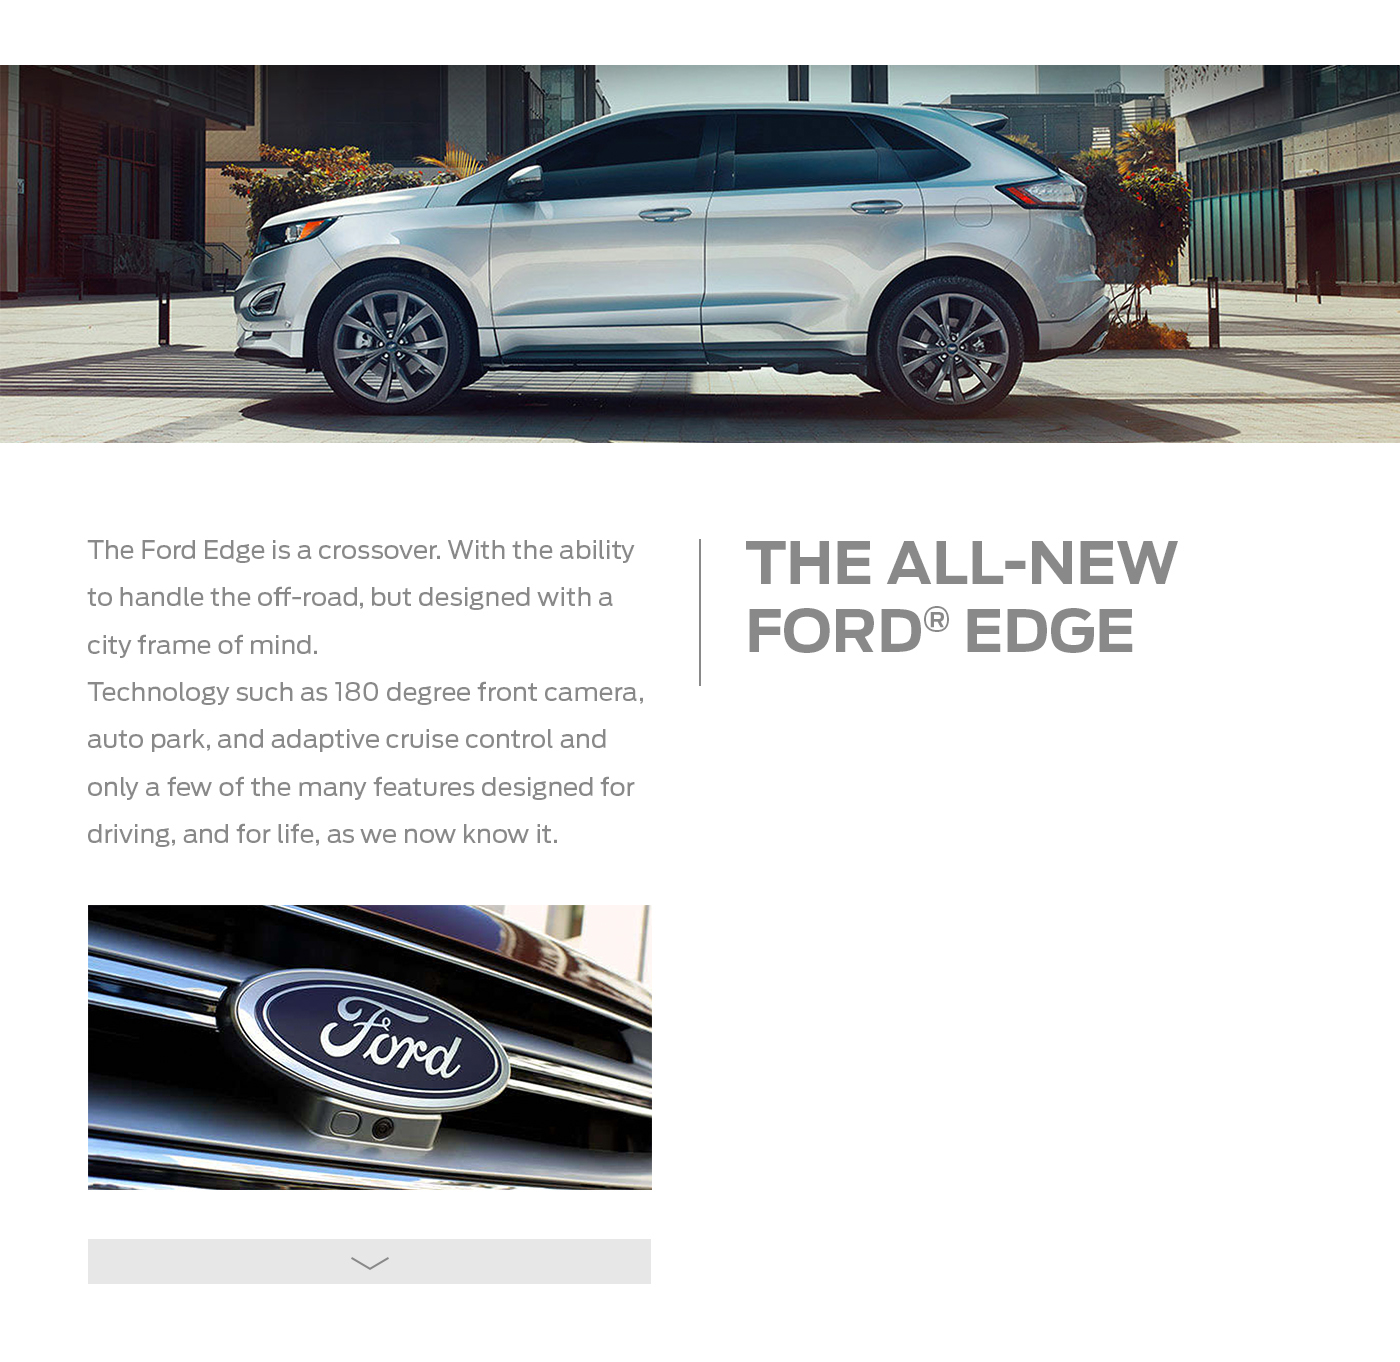 Cars Ford gifs Stories edge Evolved new Socialmedia